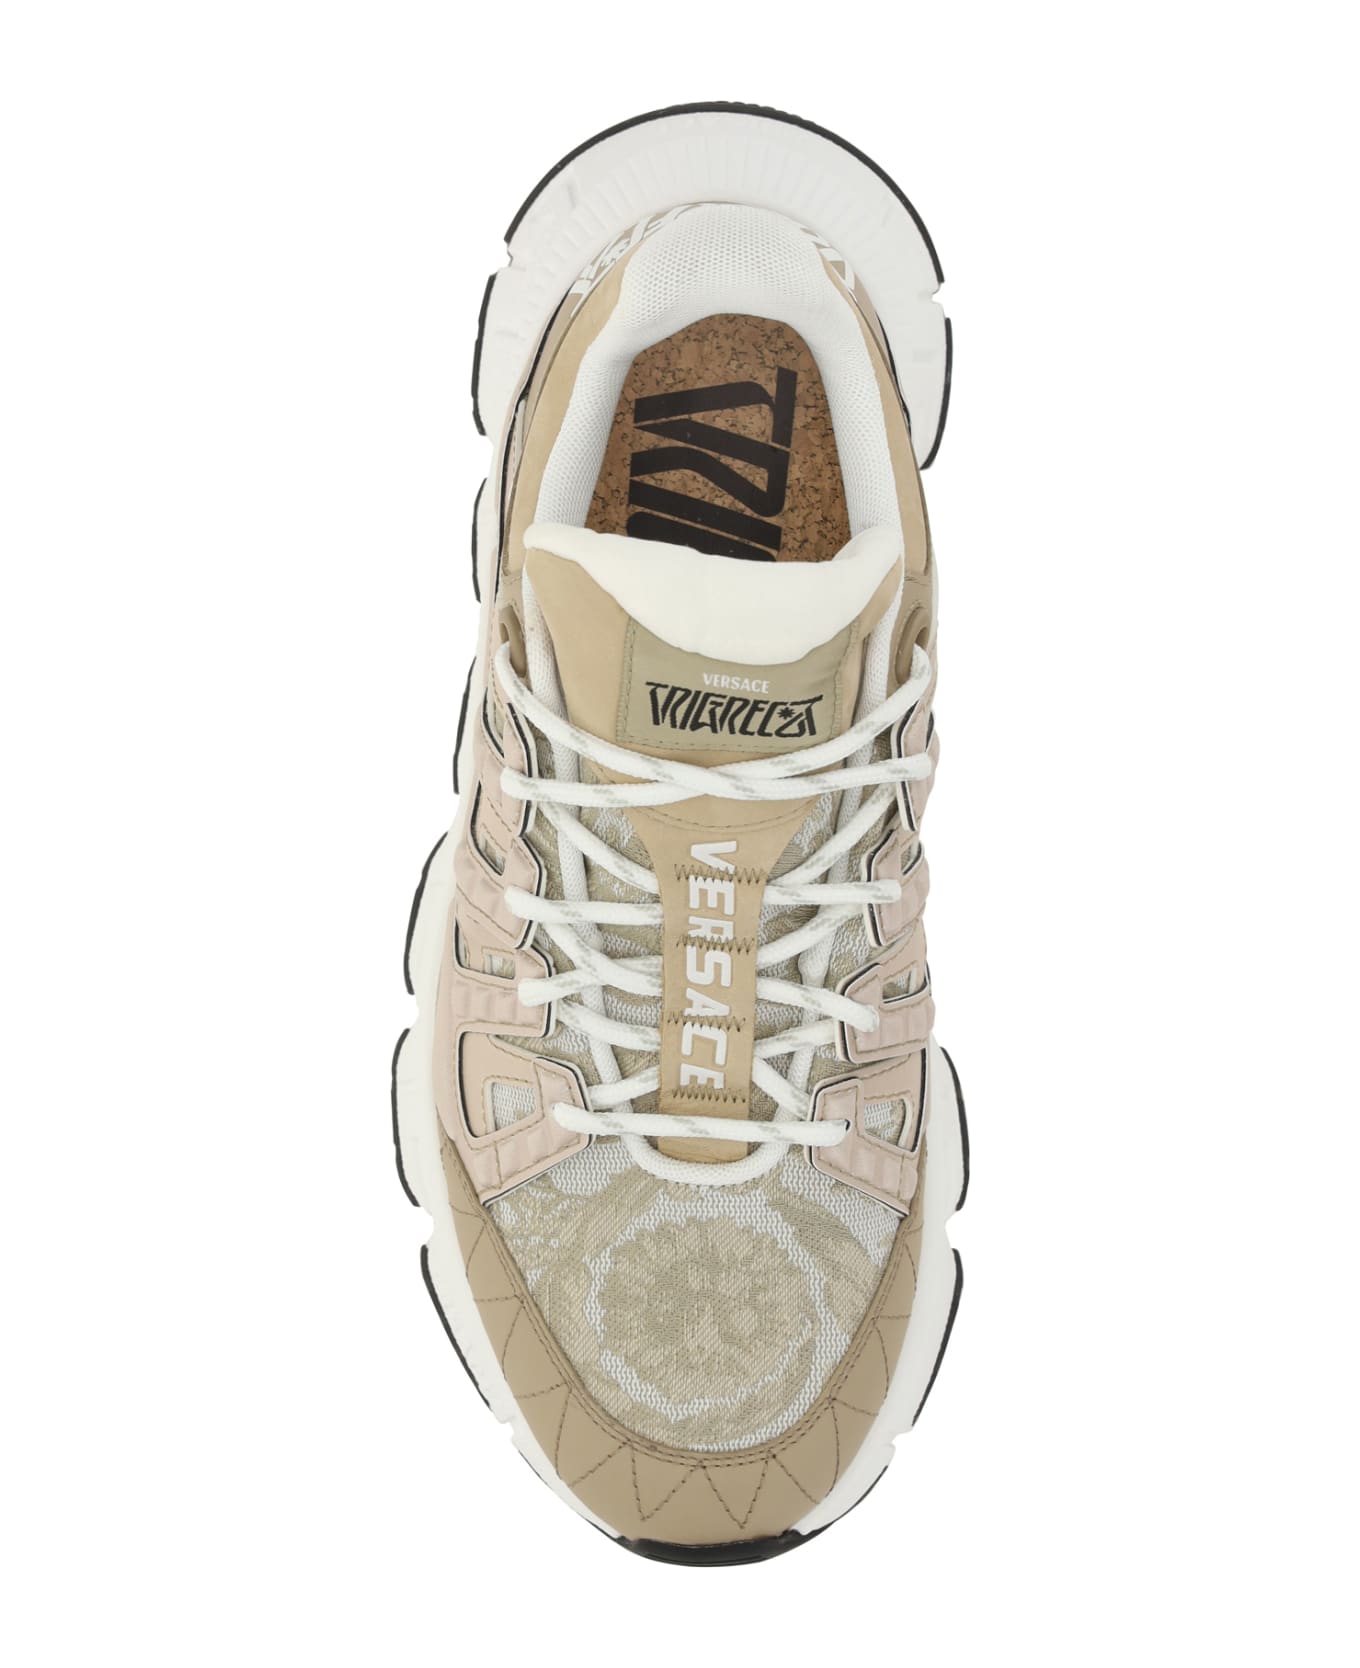 Versace Trigreca Sneakers - Beige/beige スニーカー